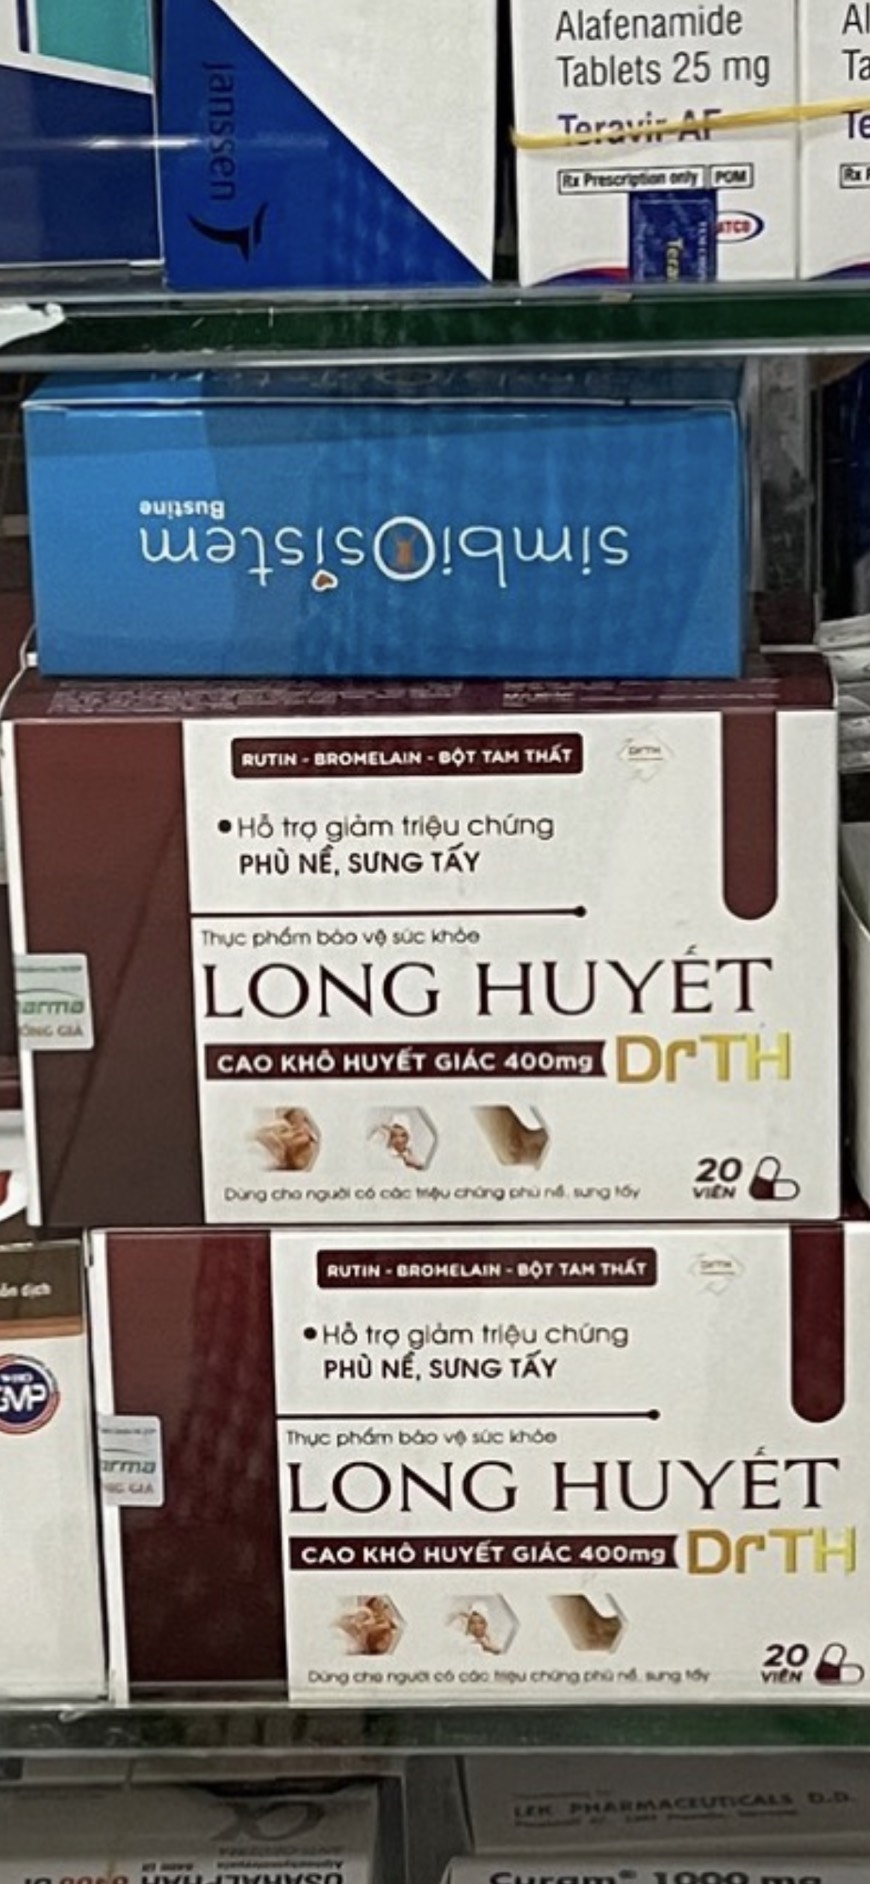 Long Huyết DrTH